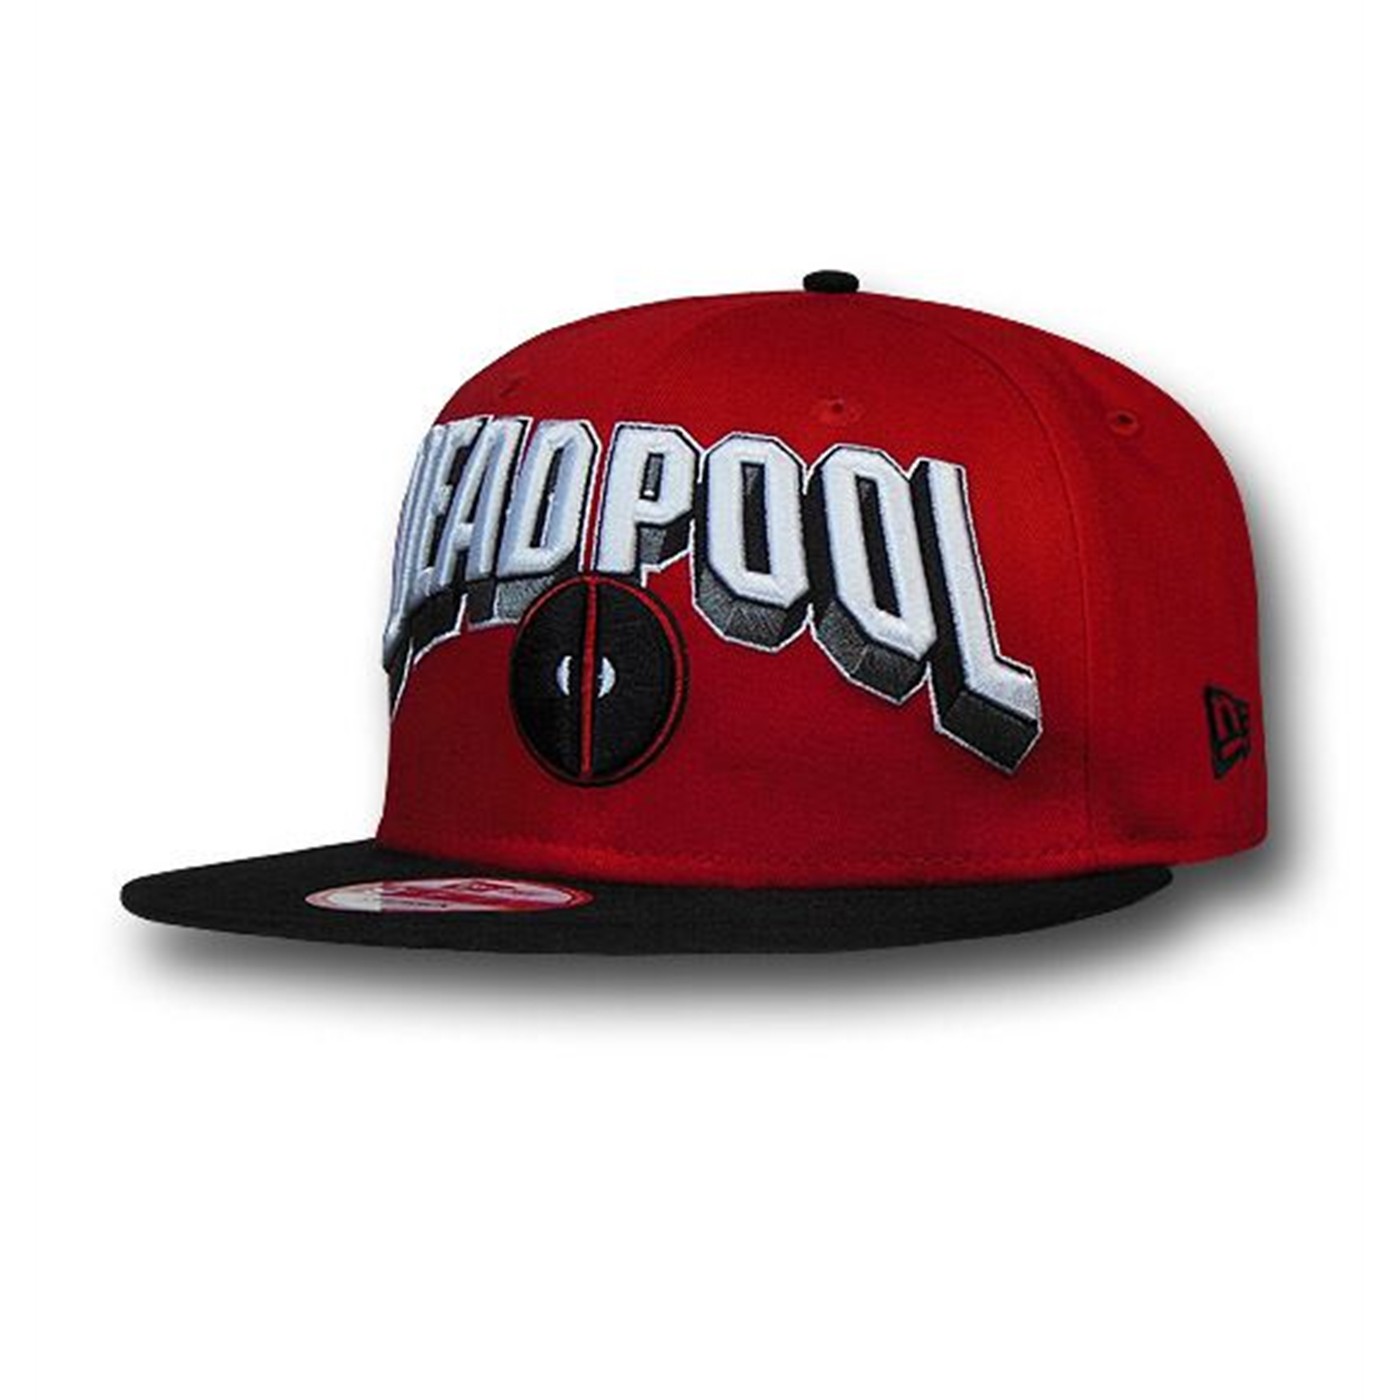 Deadpool Big Logo 9Fifty Snapback Cap